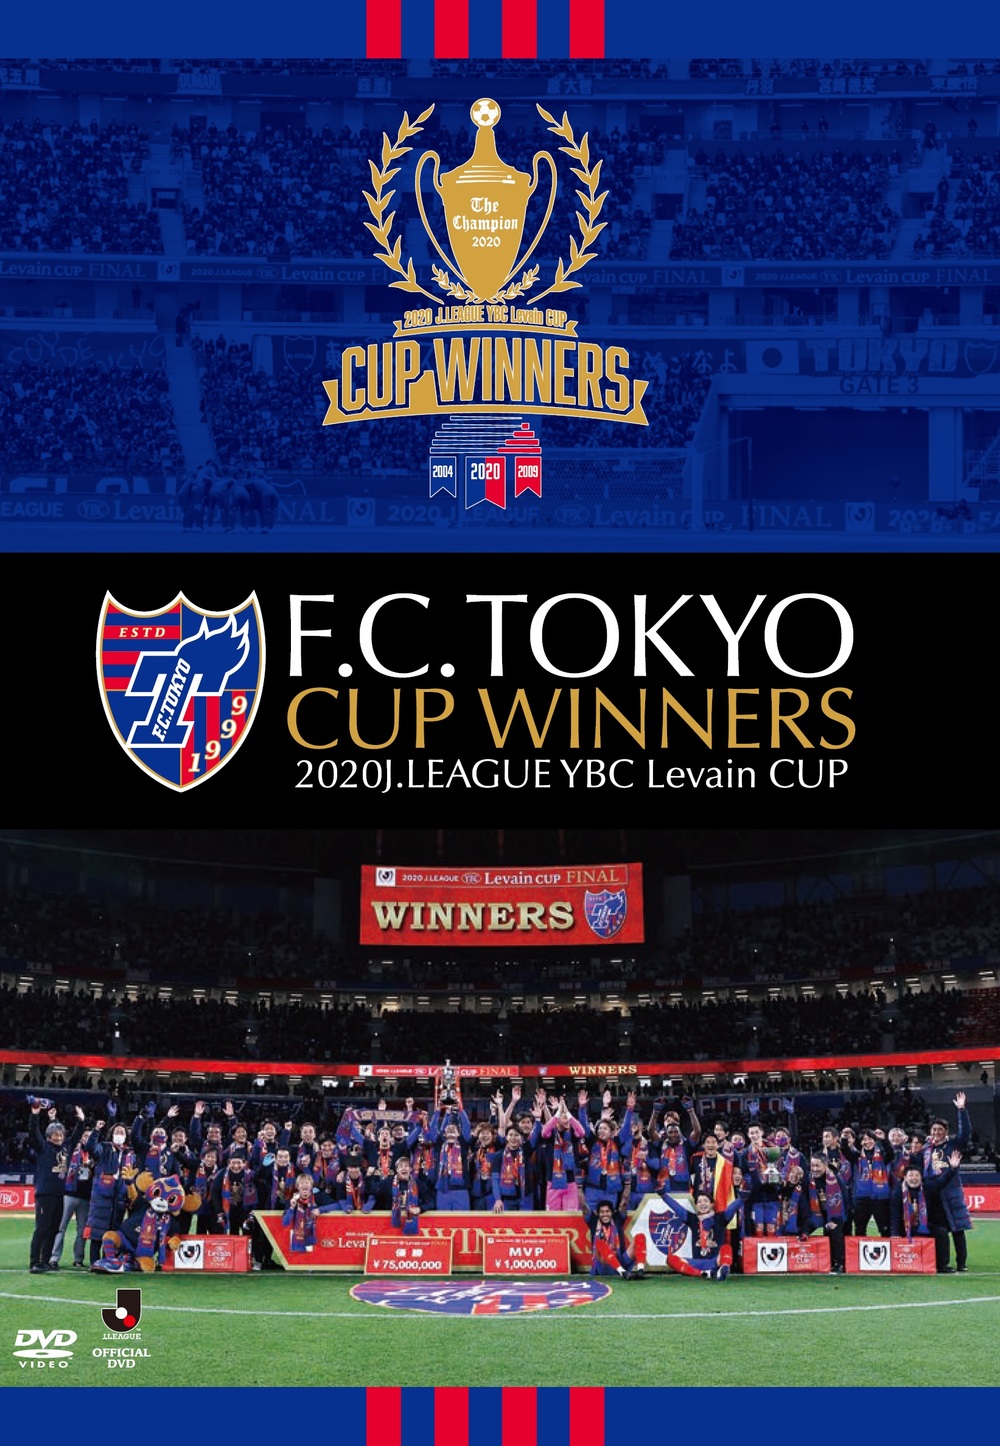 2/11 追記】『F.C.TOKYO CUP WINNERS -2020J.LEAGUE YBC Levain CUP